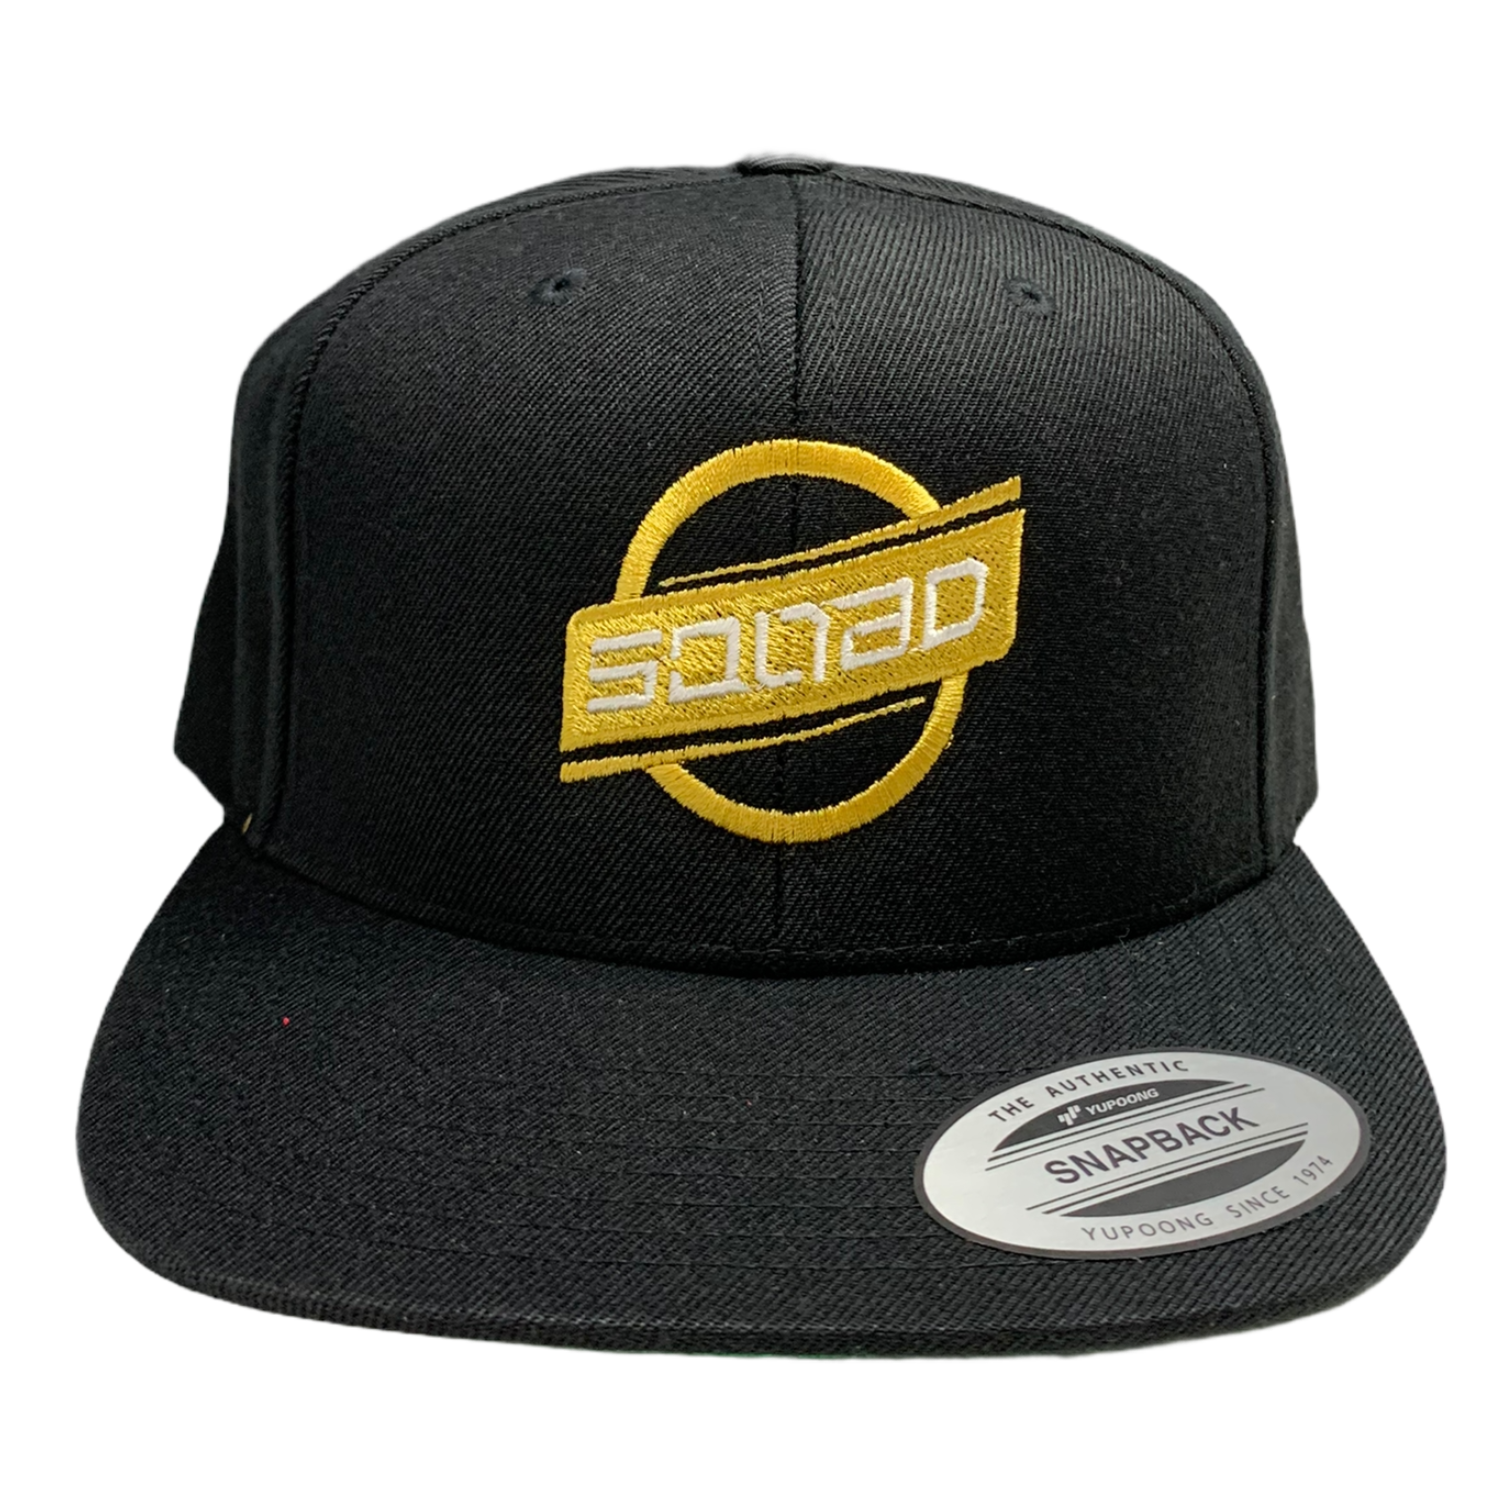 Deuce Squad Flat Bill Snapback Hat Black